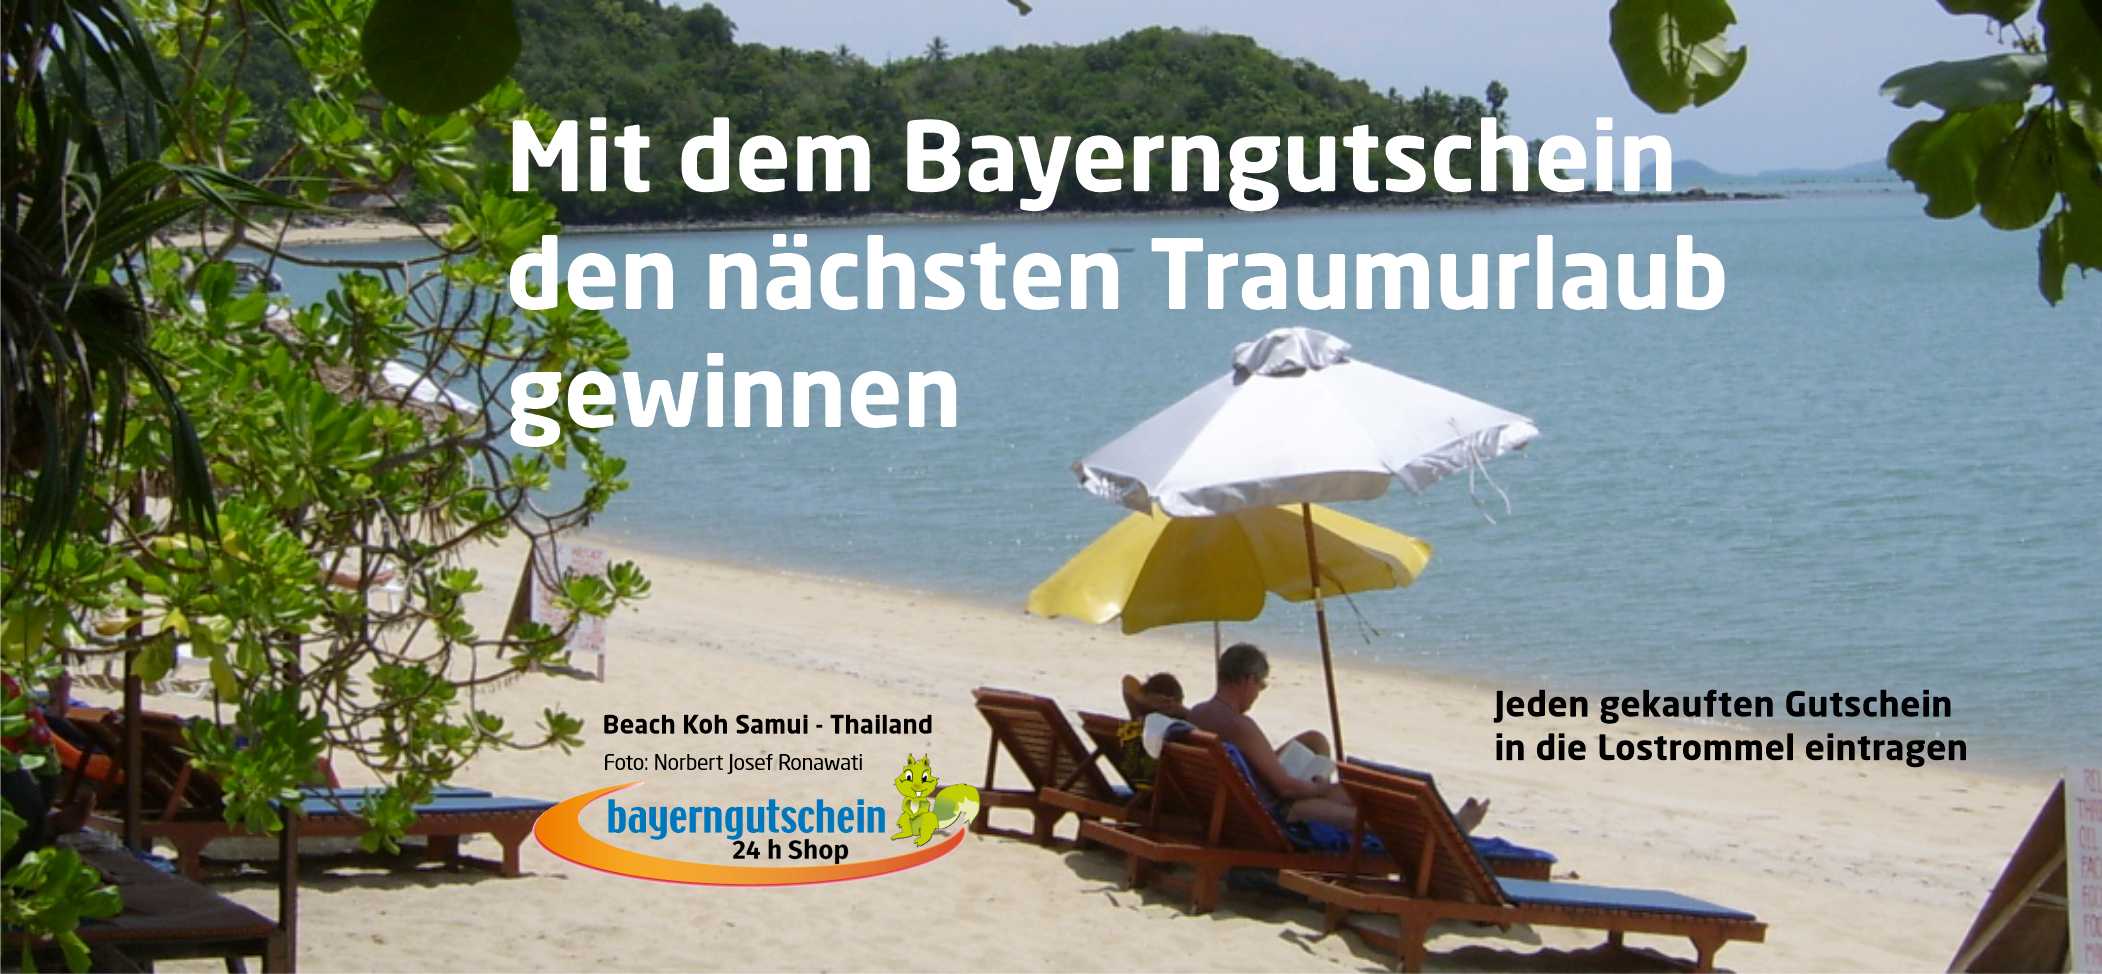 Bayerngutschein kaufen - Urlaub gewinnen